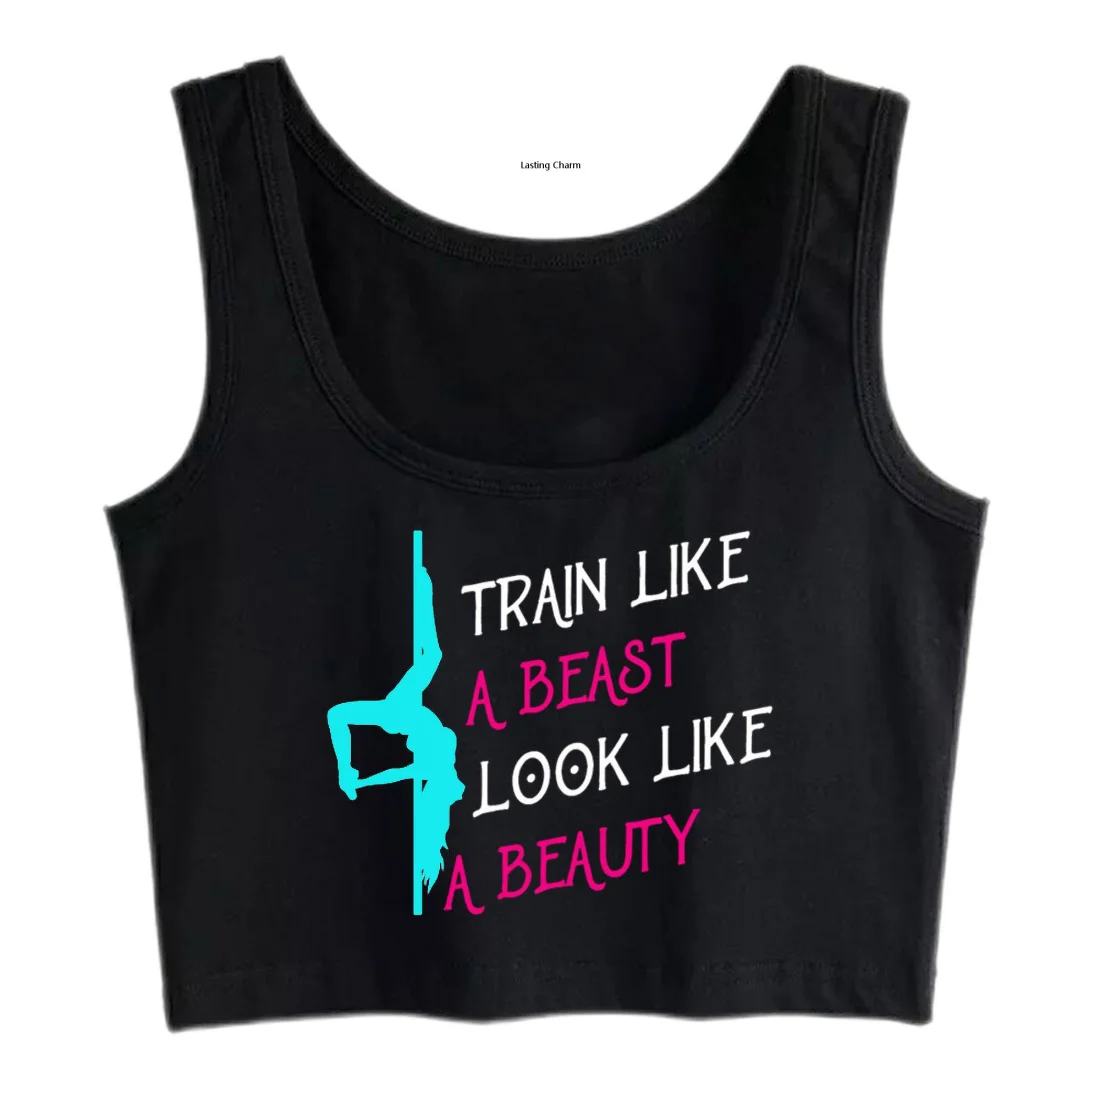 

Train like a beast look like a beauty printing Crop Top